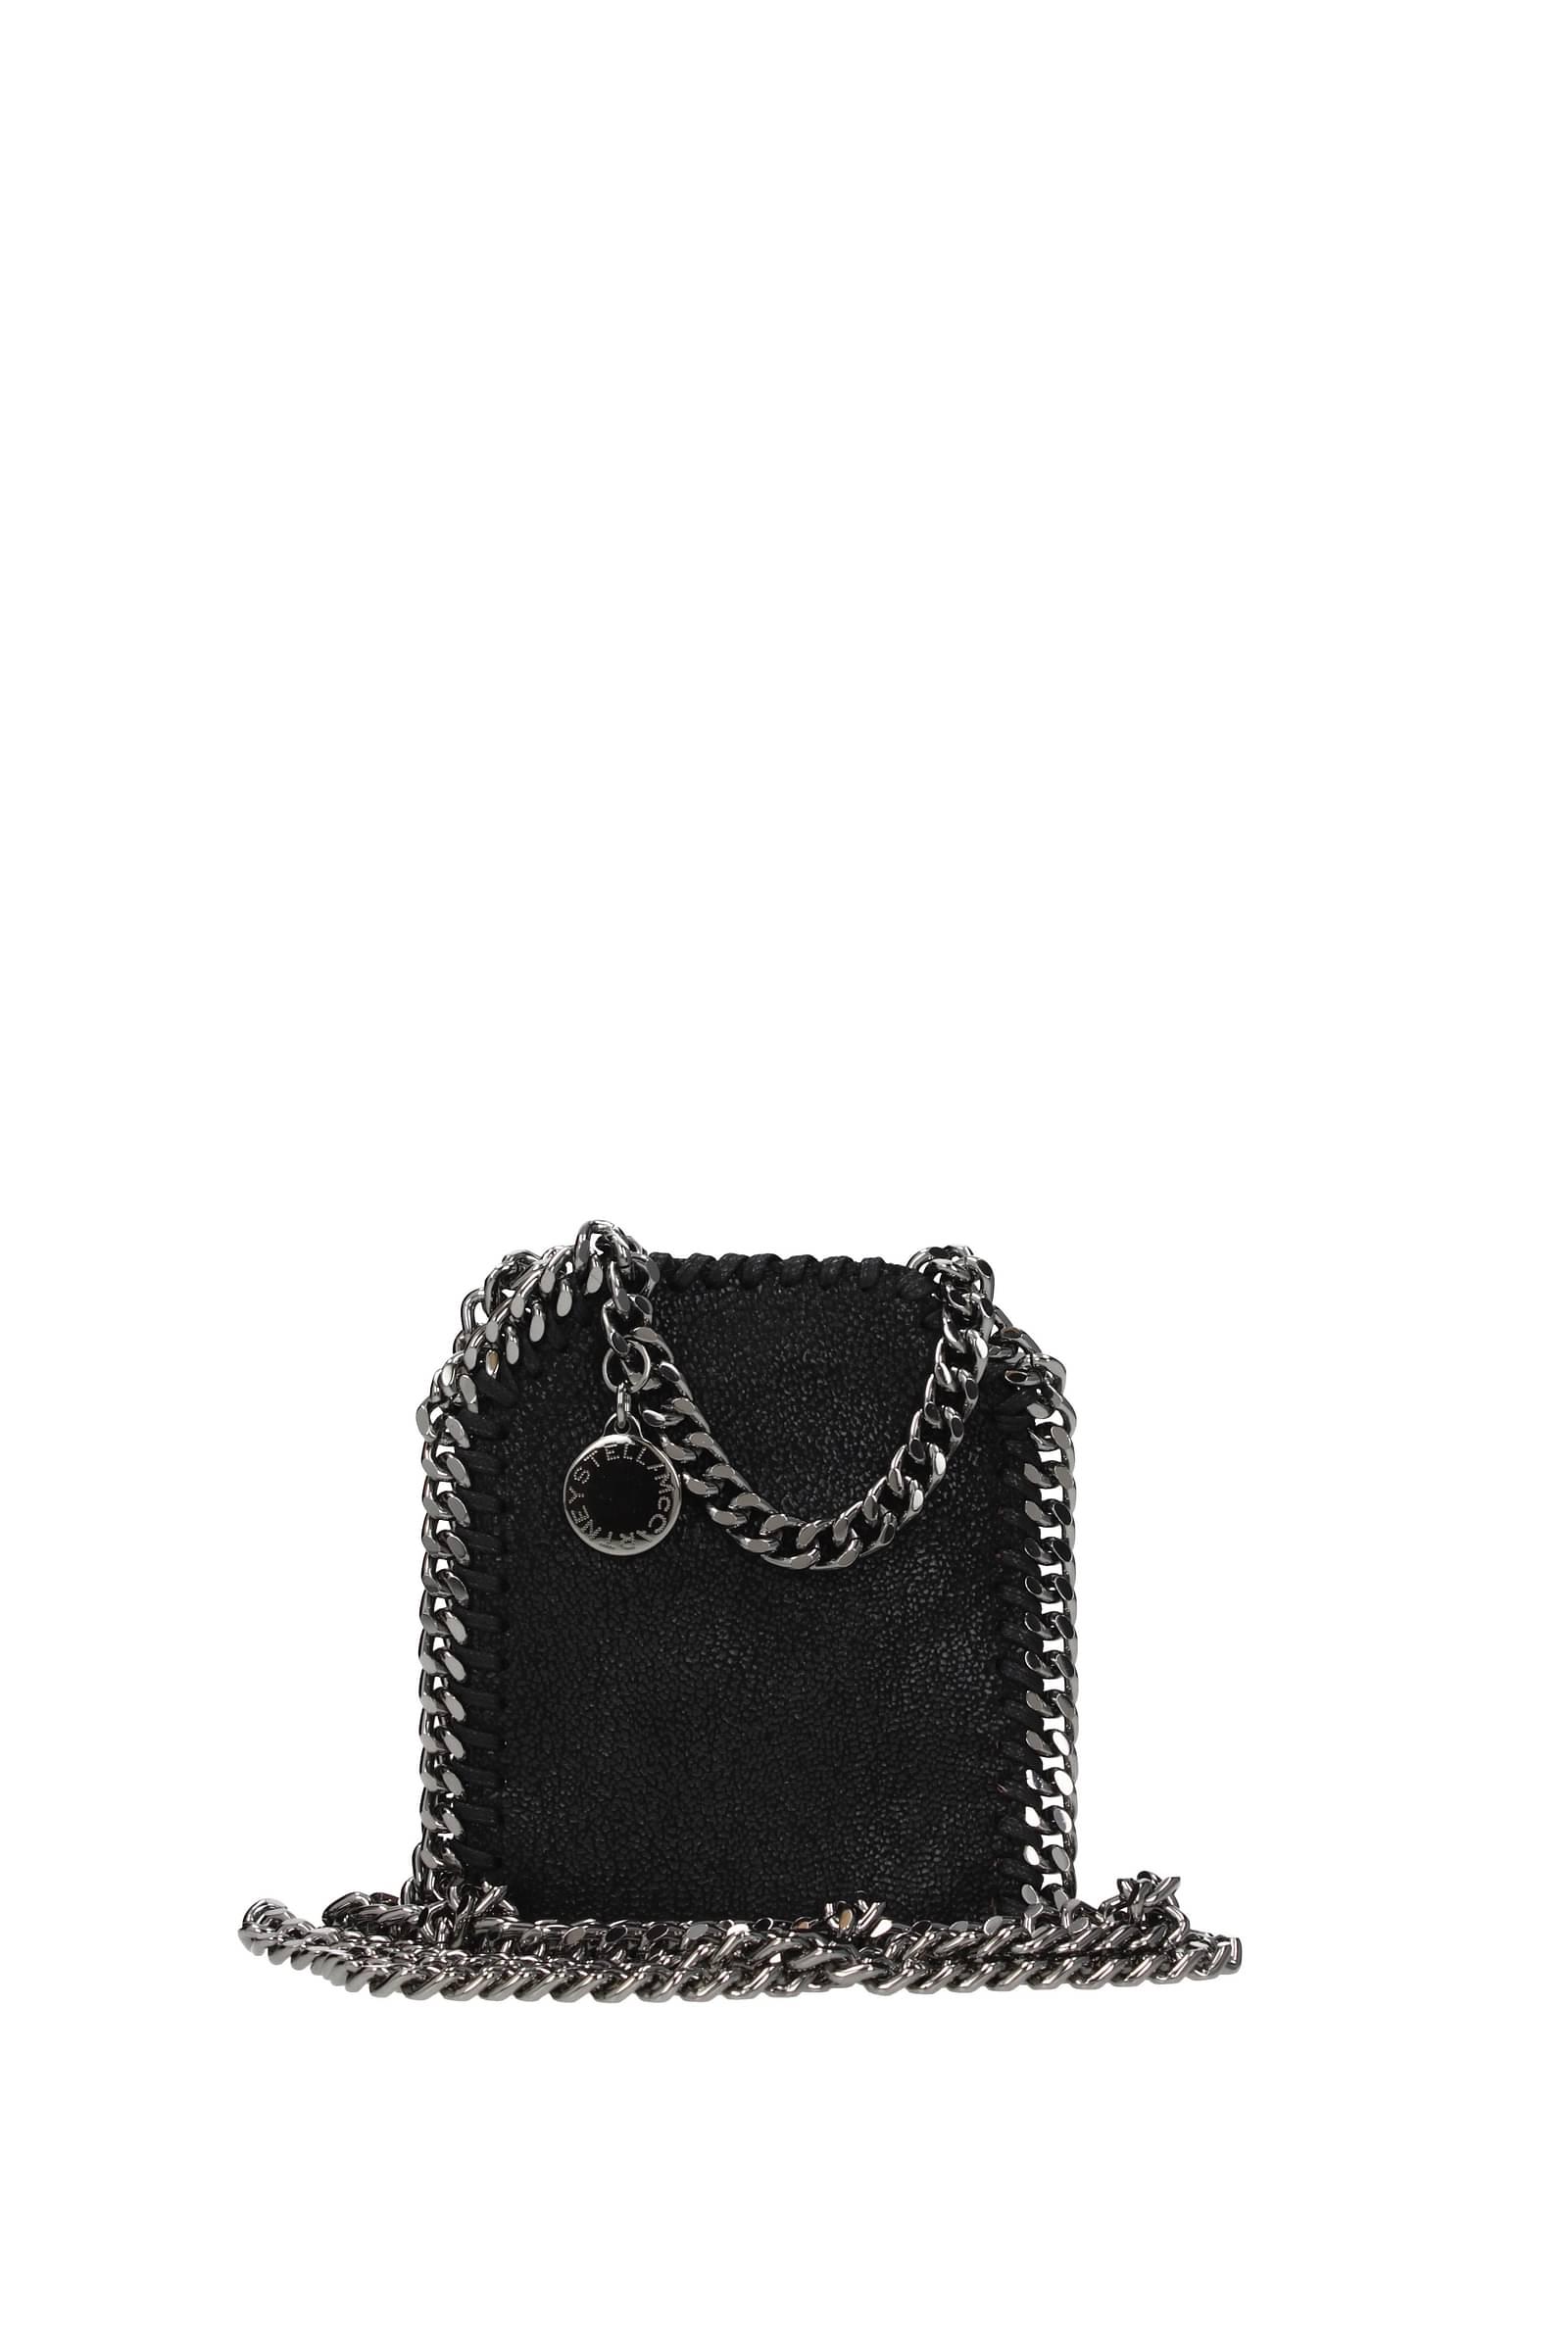 Stella McCartney Handbags Falabella Micro Eco Suede in Black | Lyst